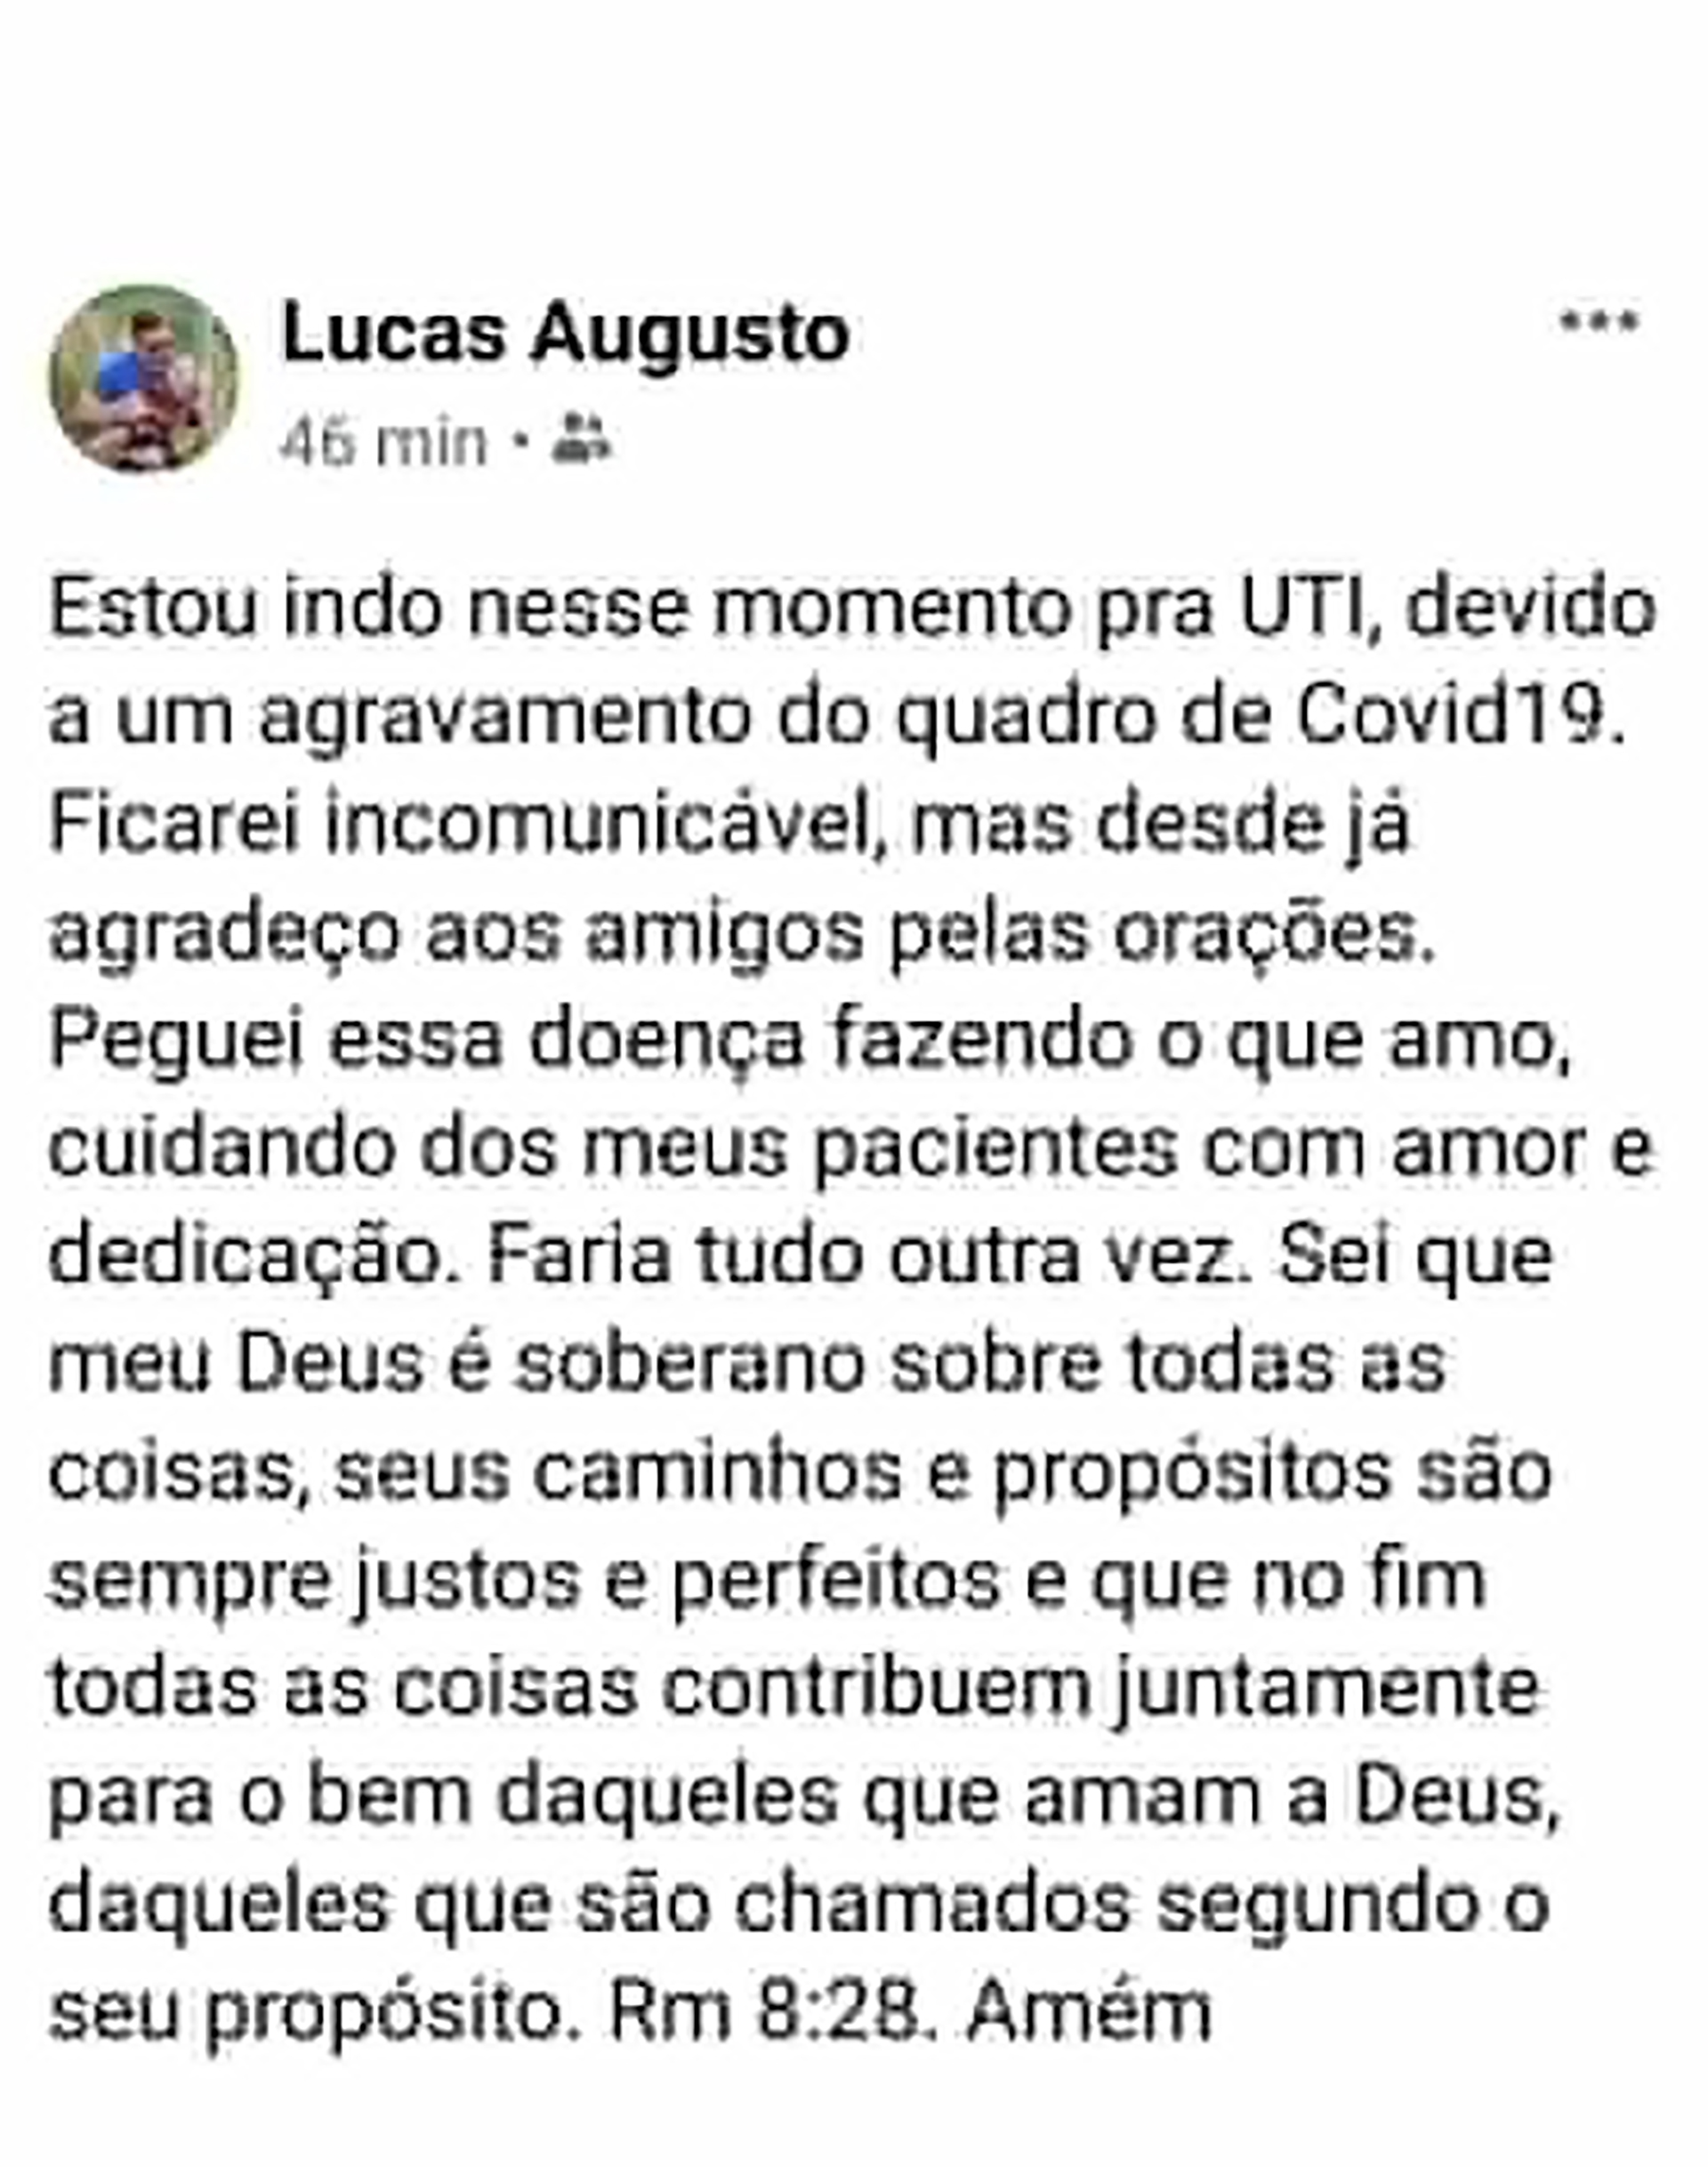 El mensaje de Lucas Augusto Pires en su cuenta de Facebook antes de entrar en la UTI